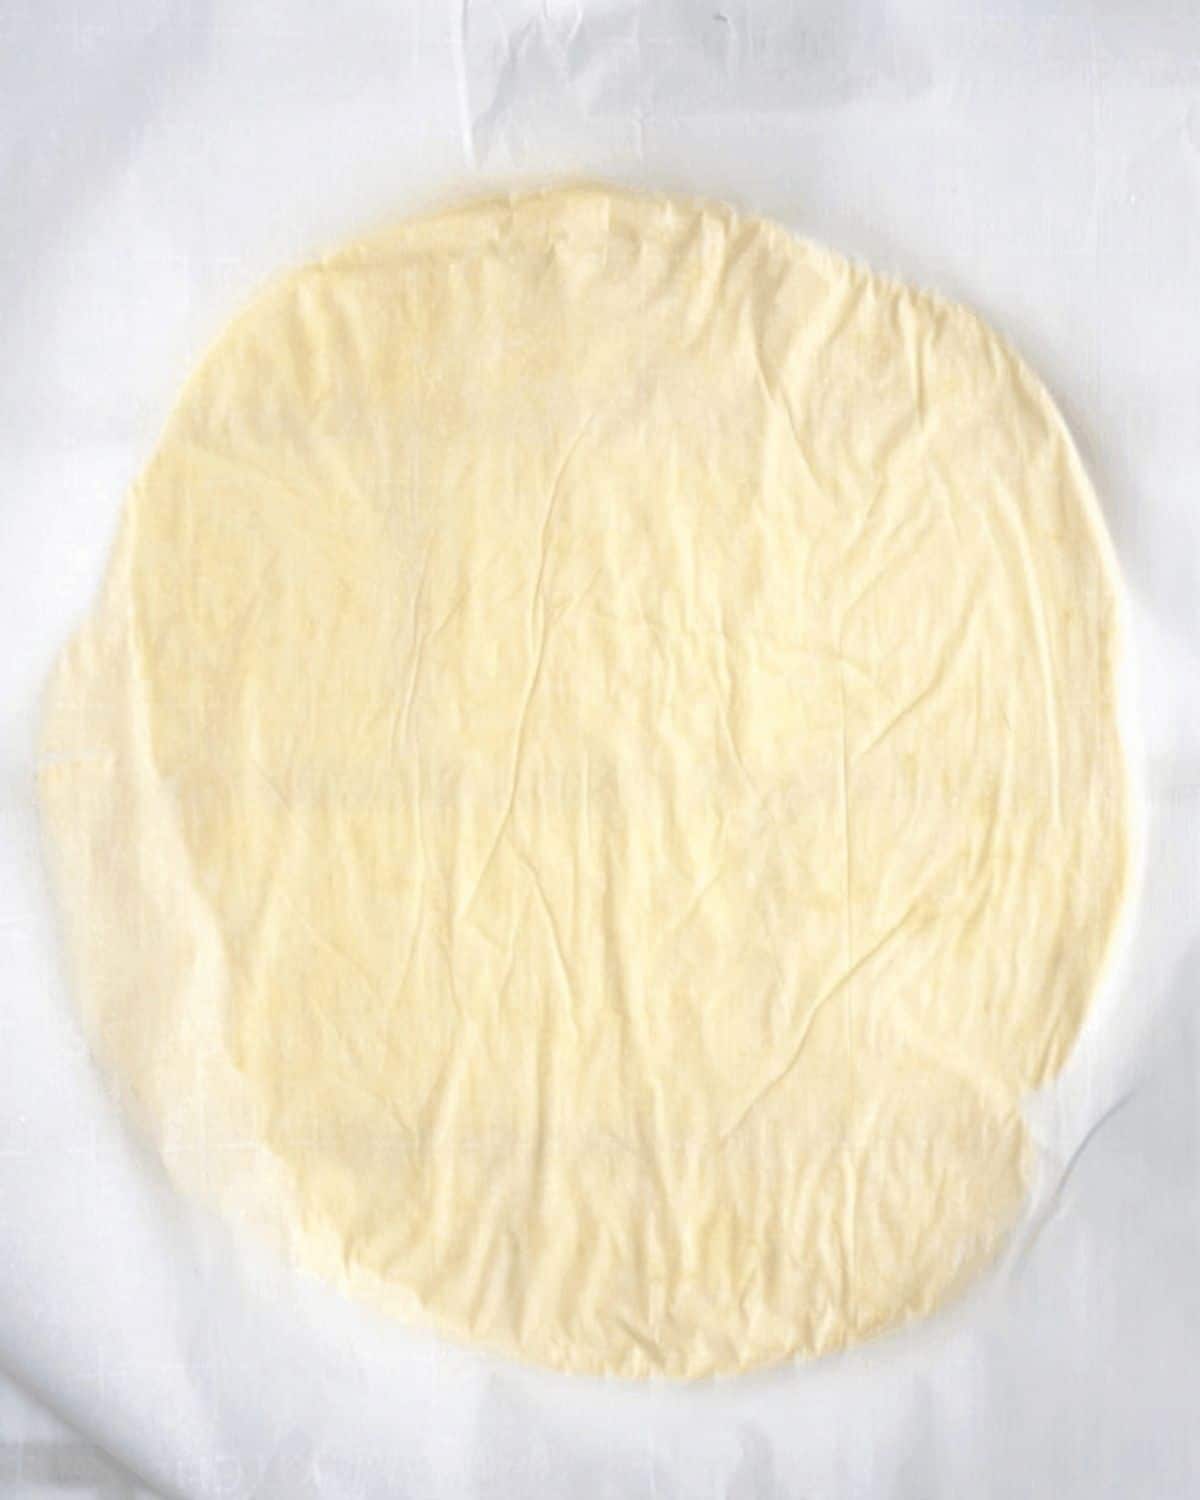  La pâte roulée en un cercle de 8 pouces de large entre deux morceaux de papier sulfurisé.